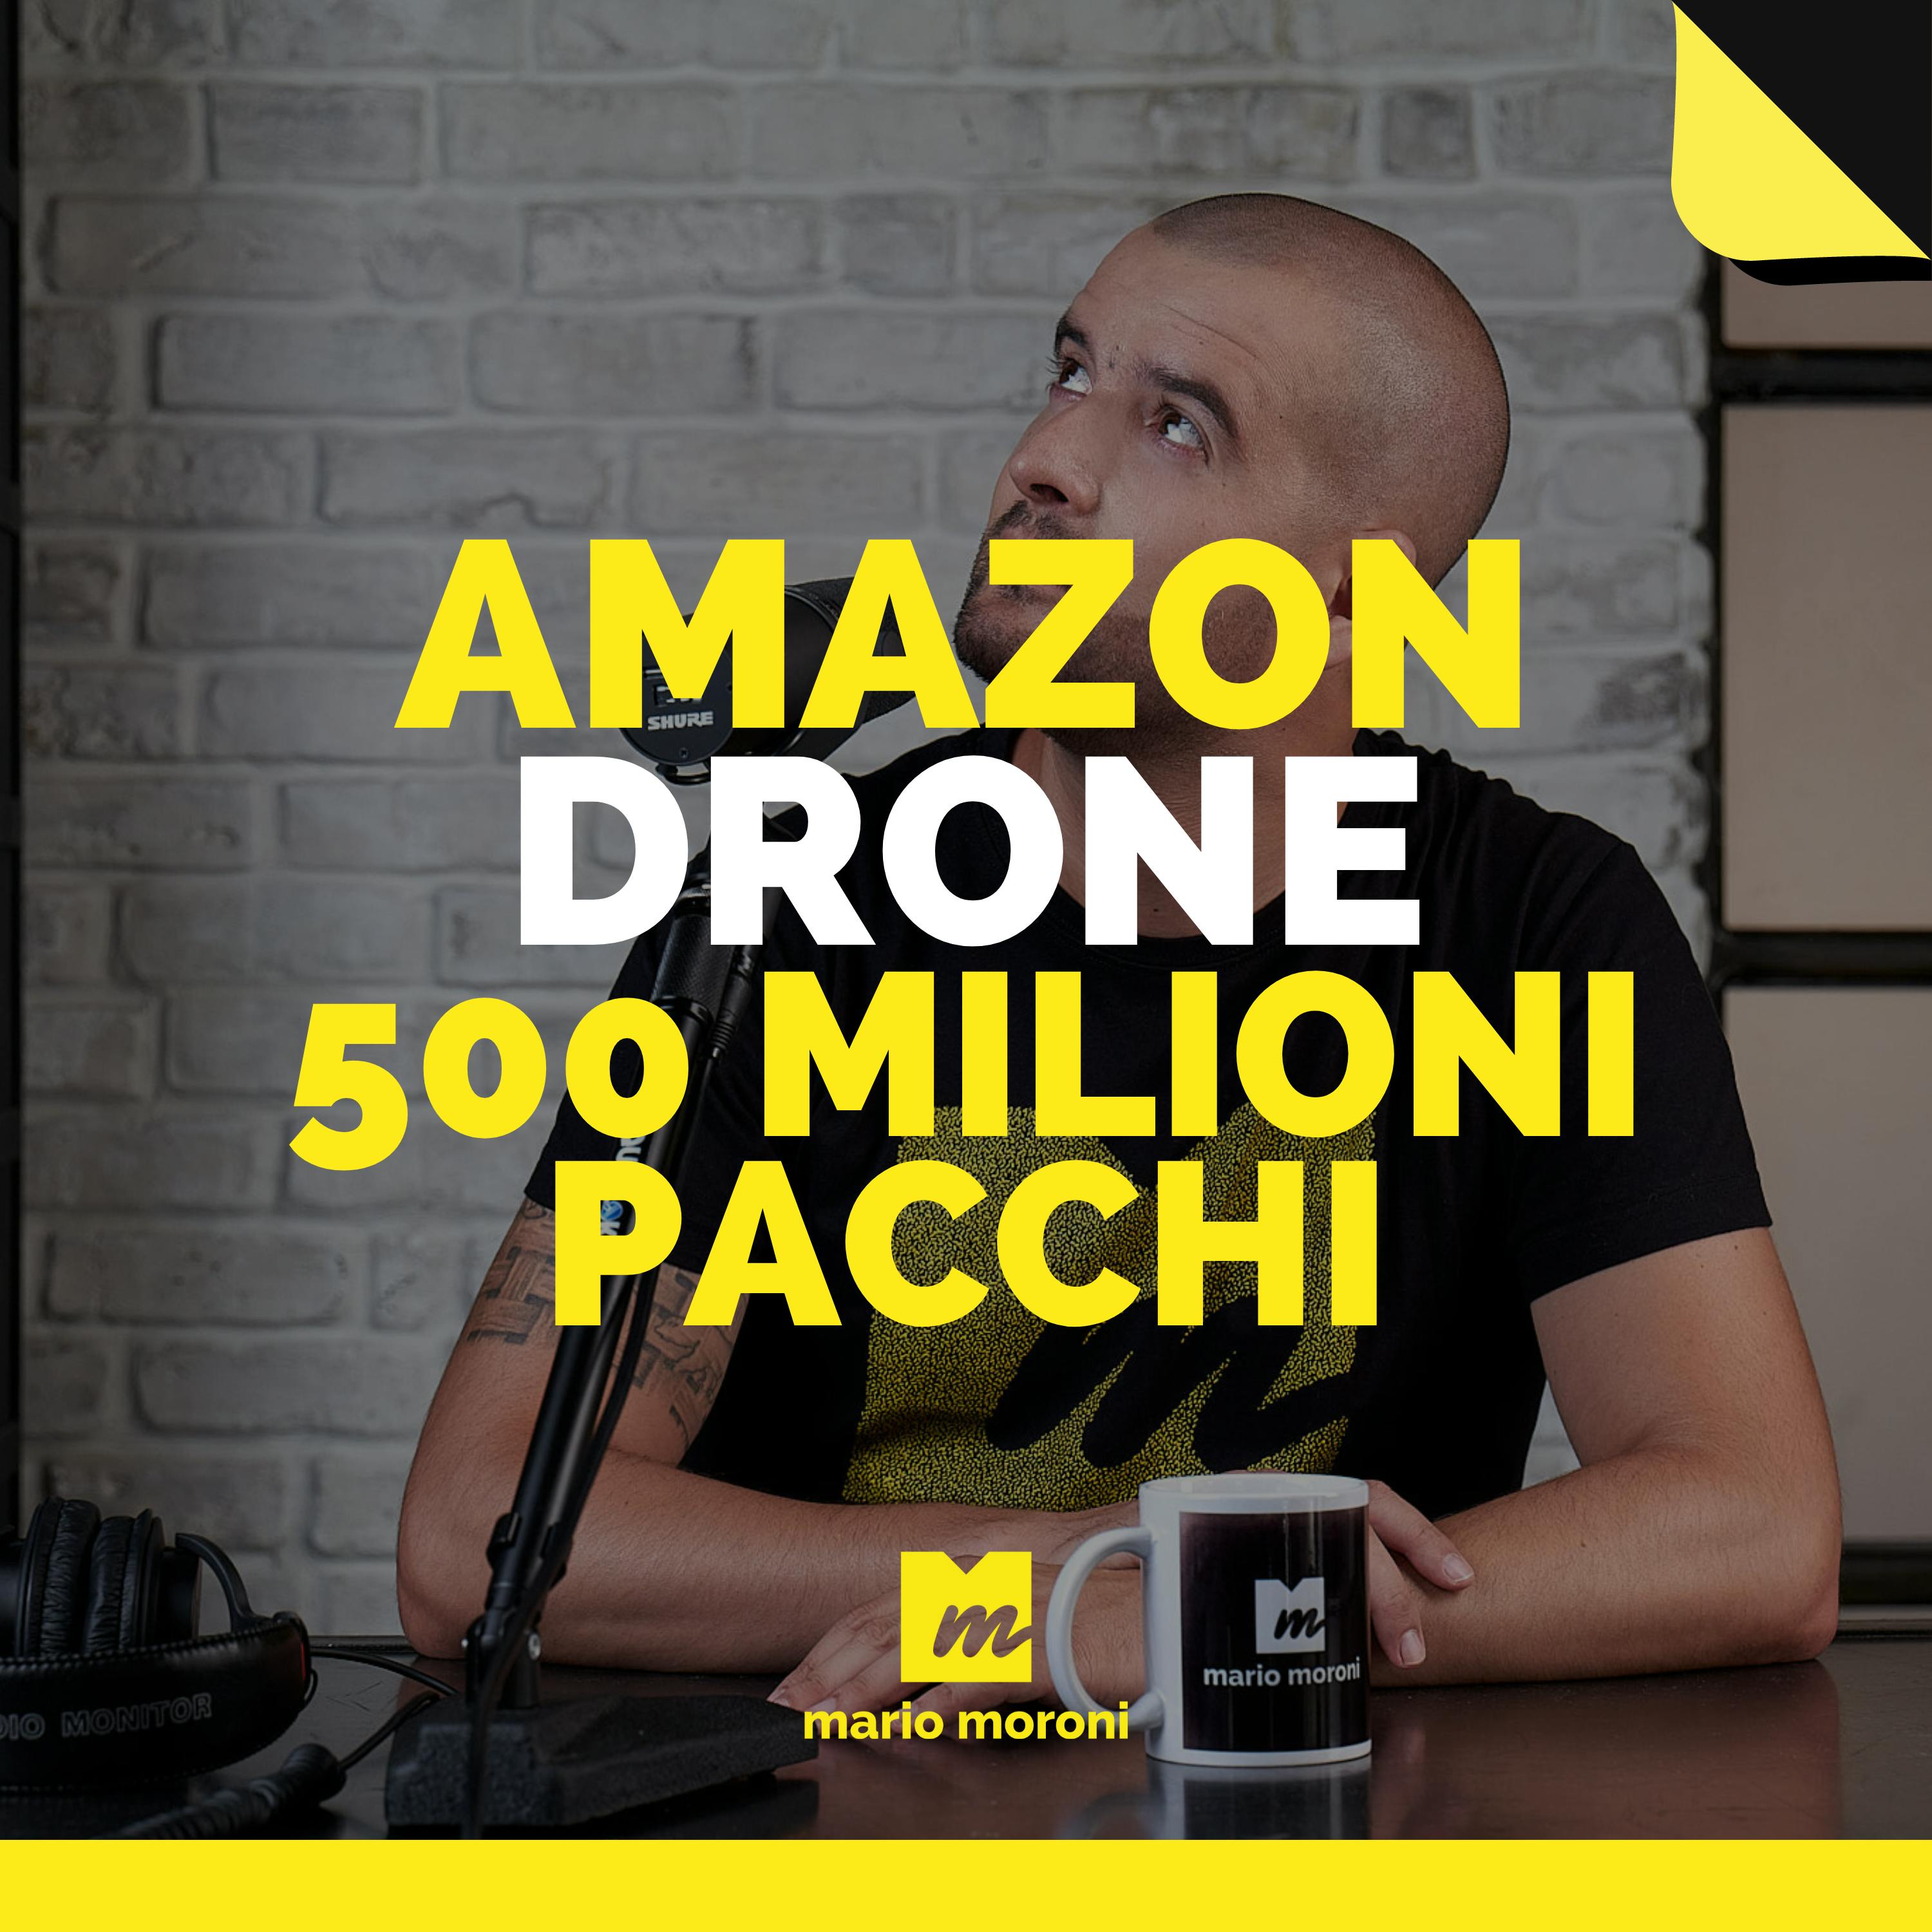 Amazon Prime AIR: in 10 anni 500 milioni di pacchi via drone